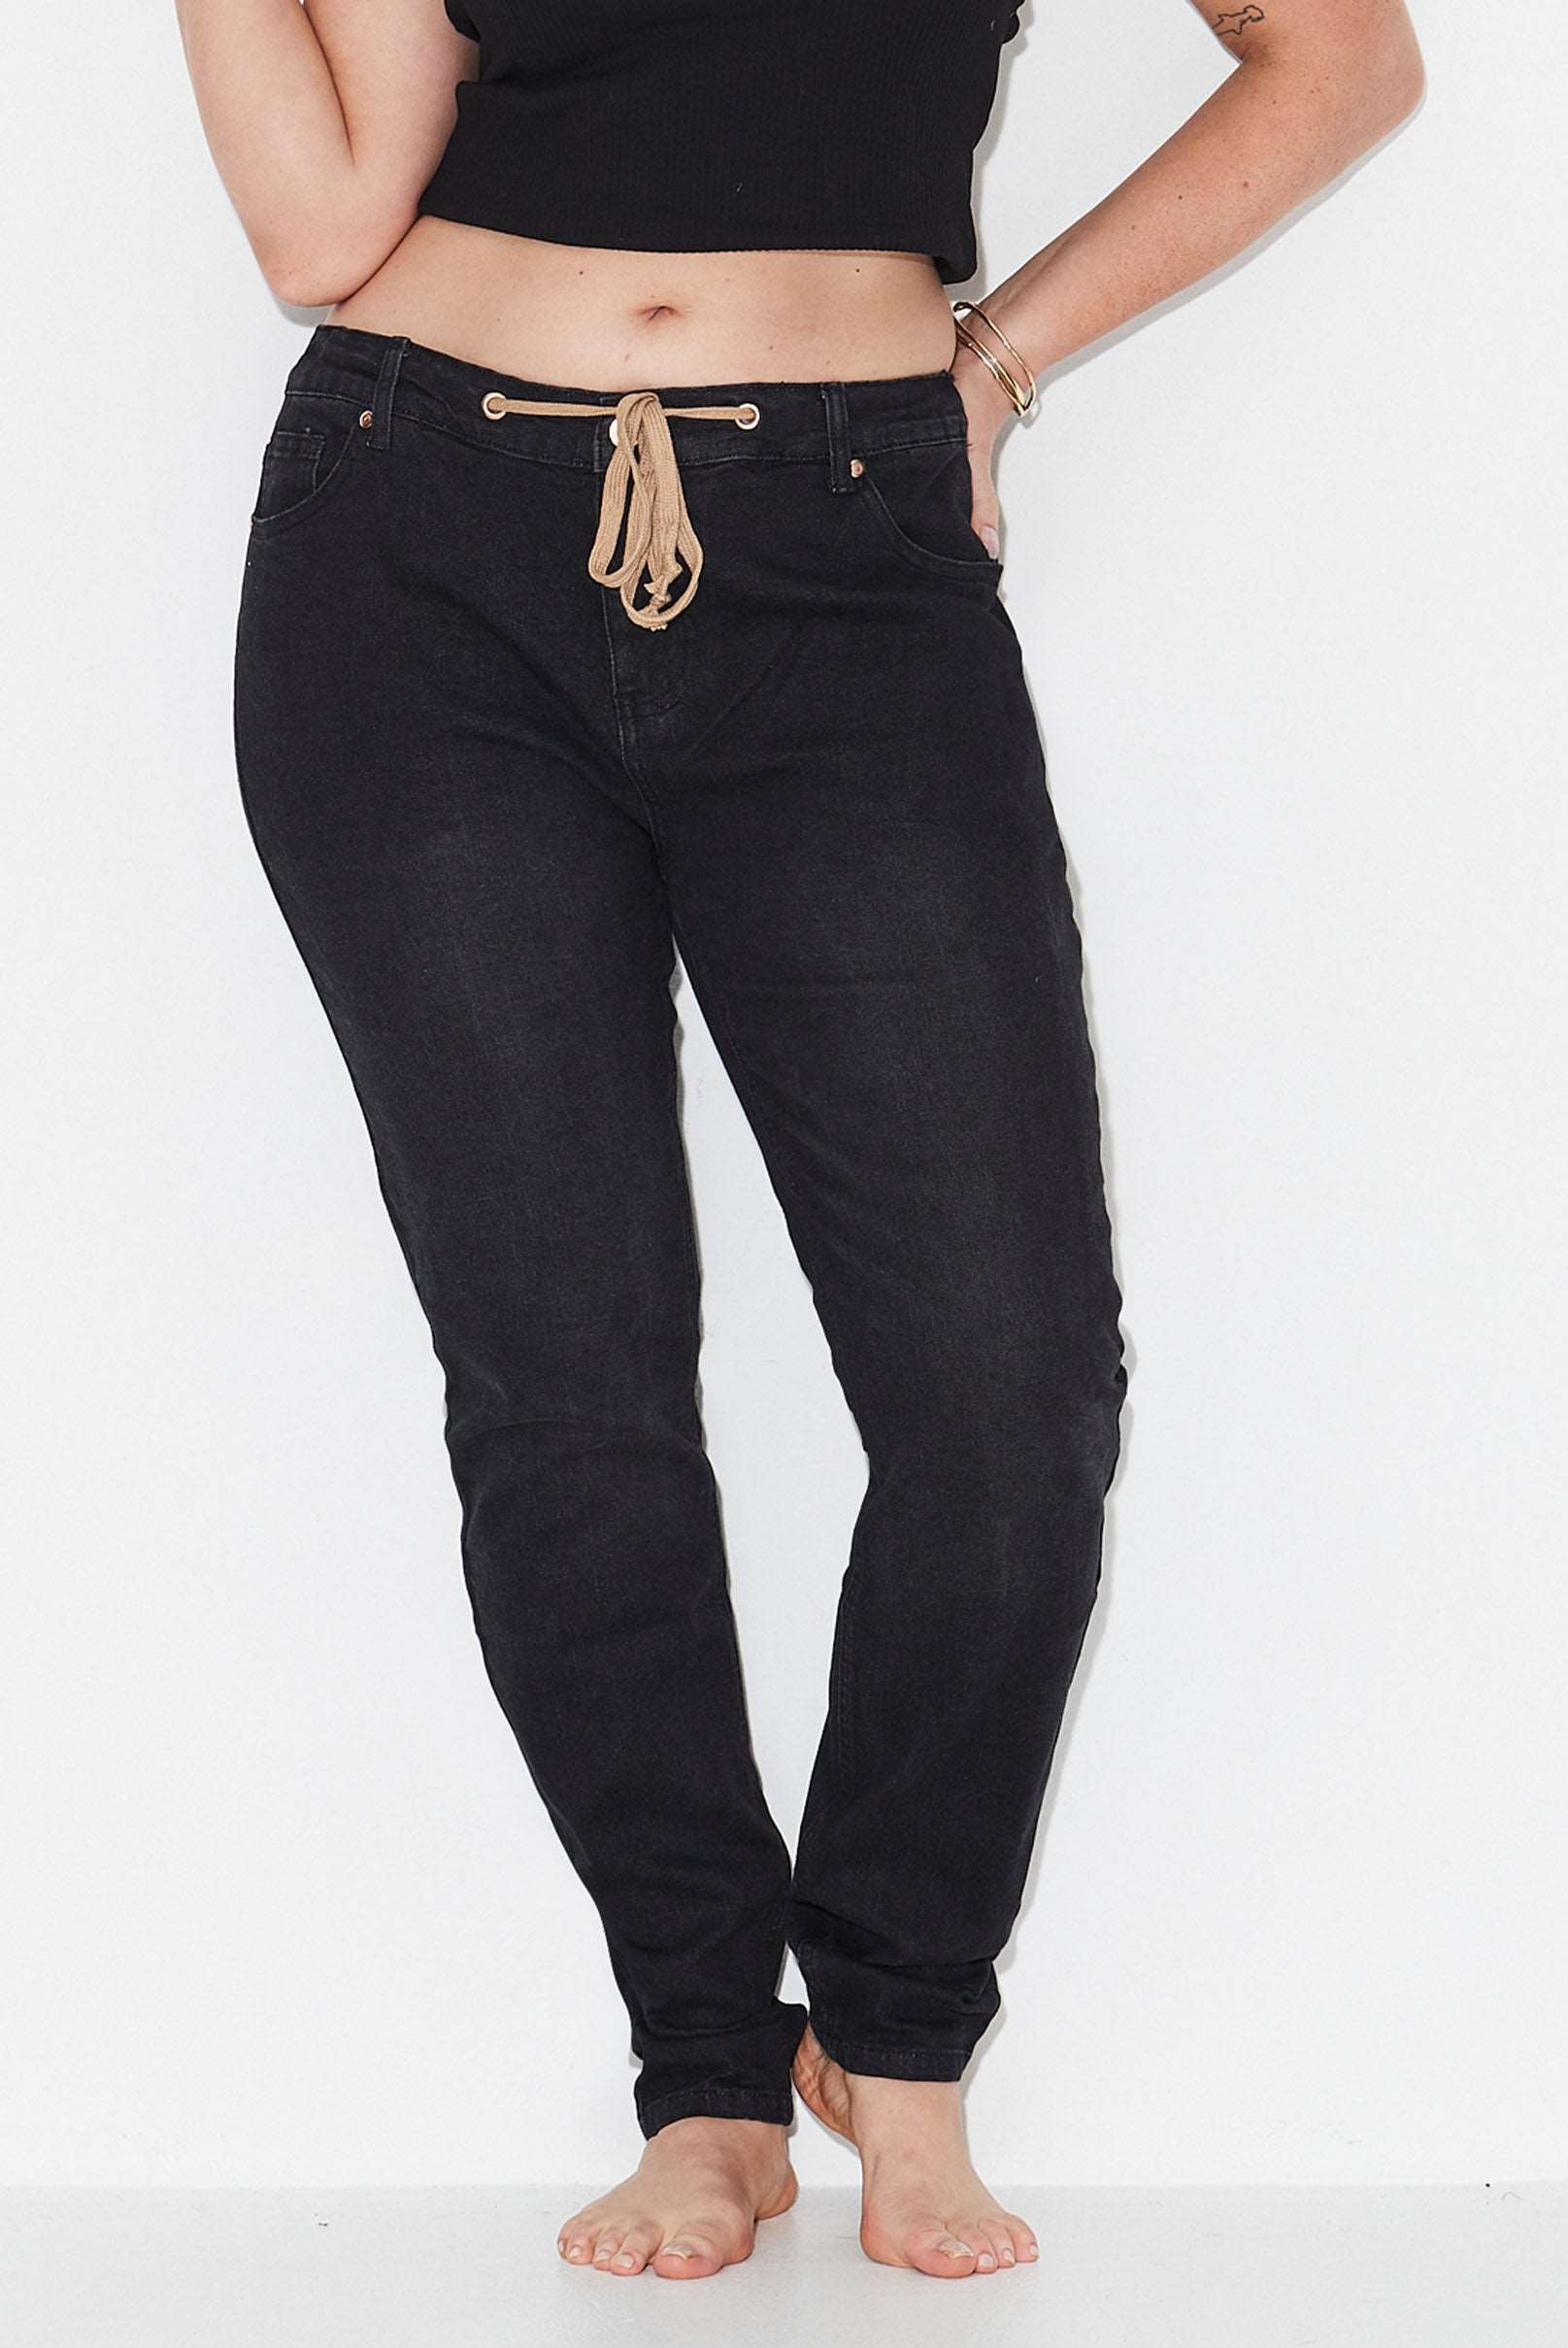 Model wears black slim leg size 16 jeans